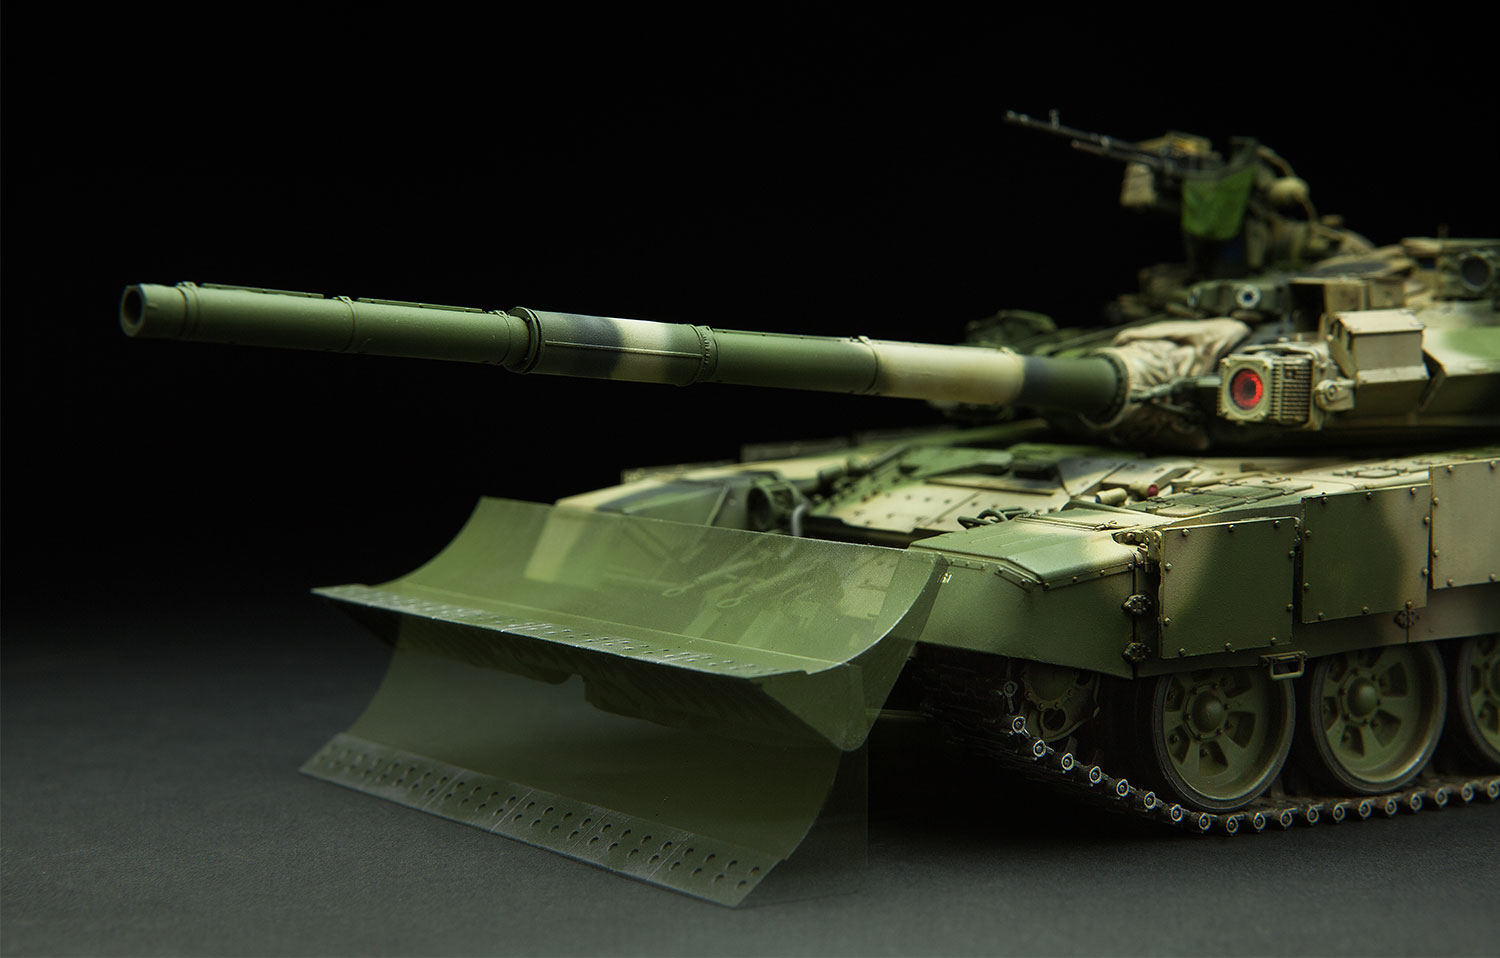 Russian Main Battle Tank T-90 w/TBS-86 Tank Dozer